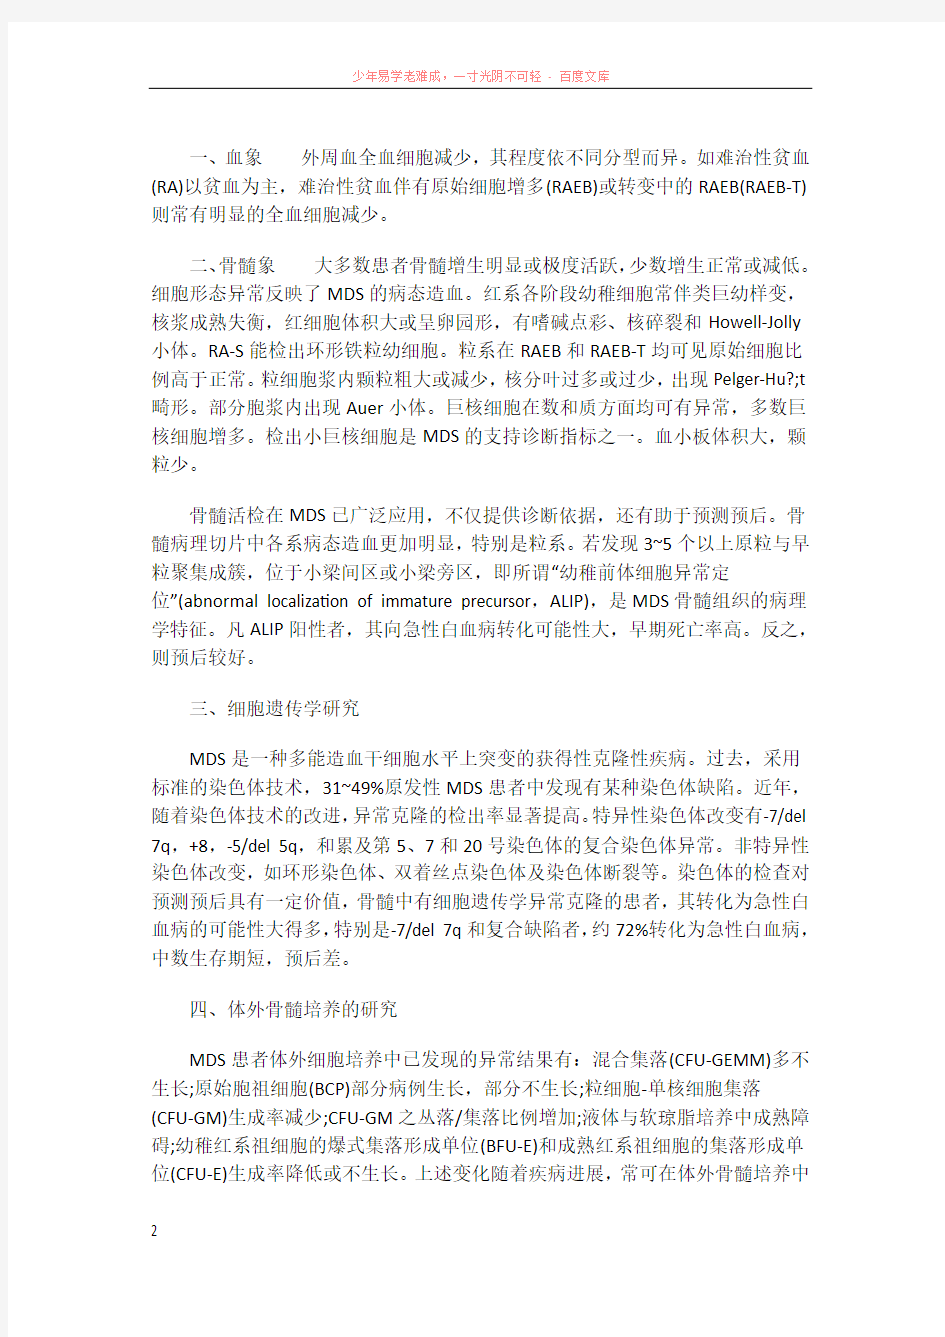 北京华科中西医结合医院血液科冀兆魁对于骨髓增生的阐述